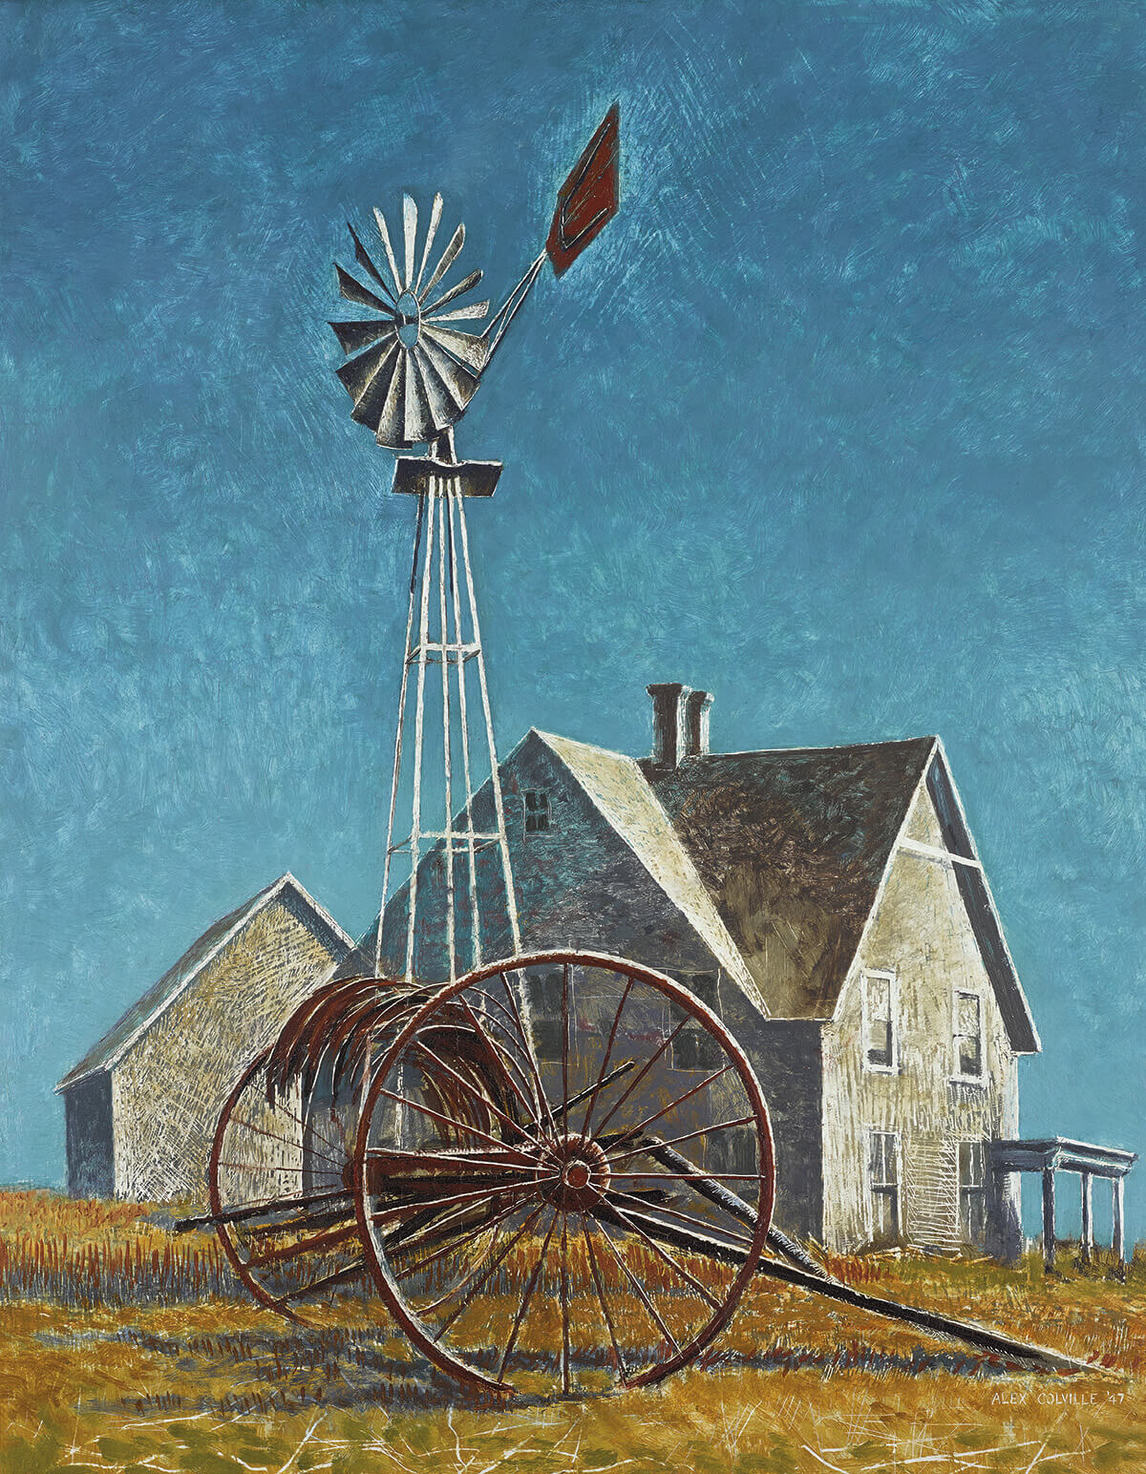 Art Canada Institute, Alex Colville, Windmill and Farm, 1947